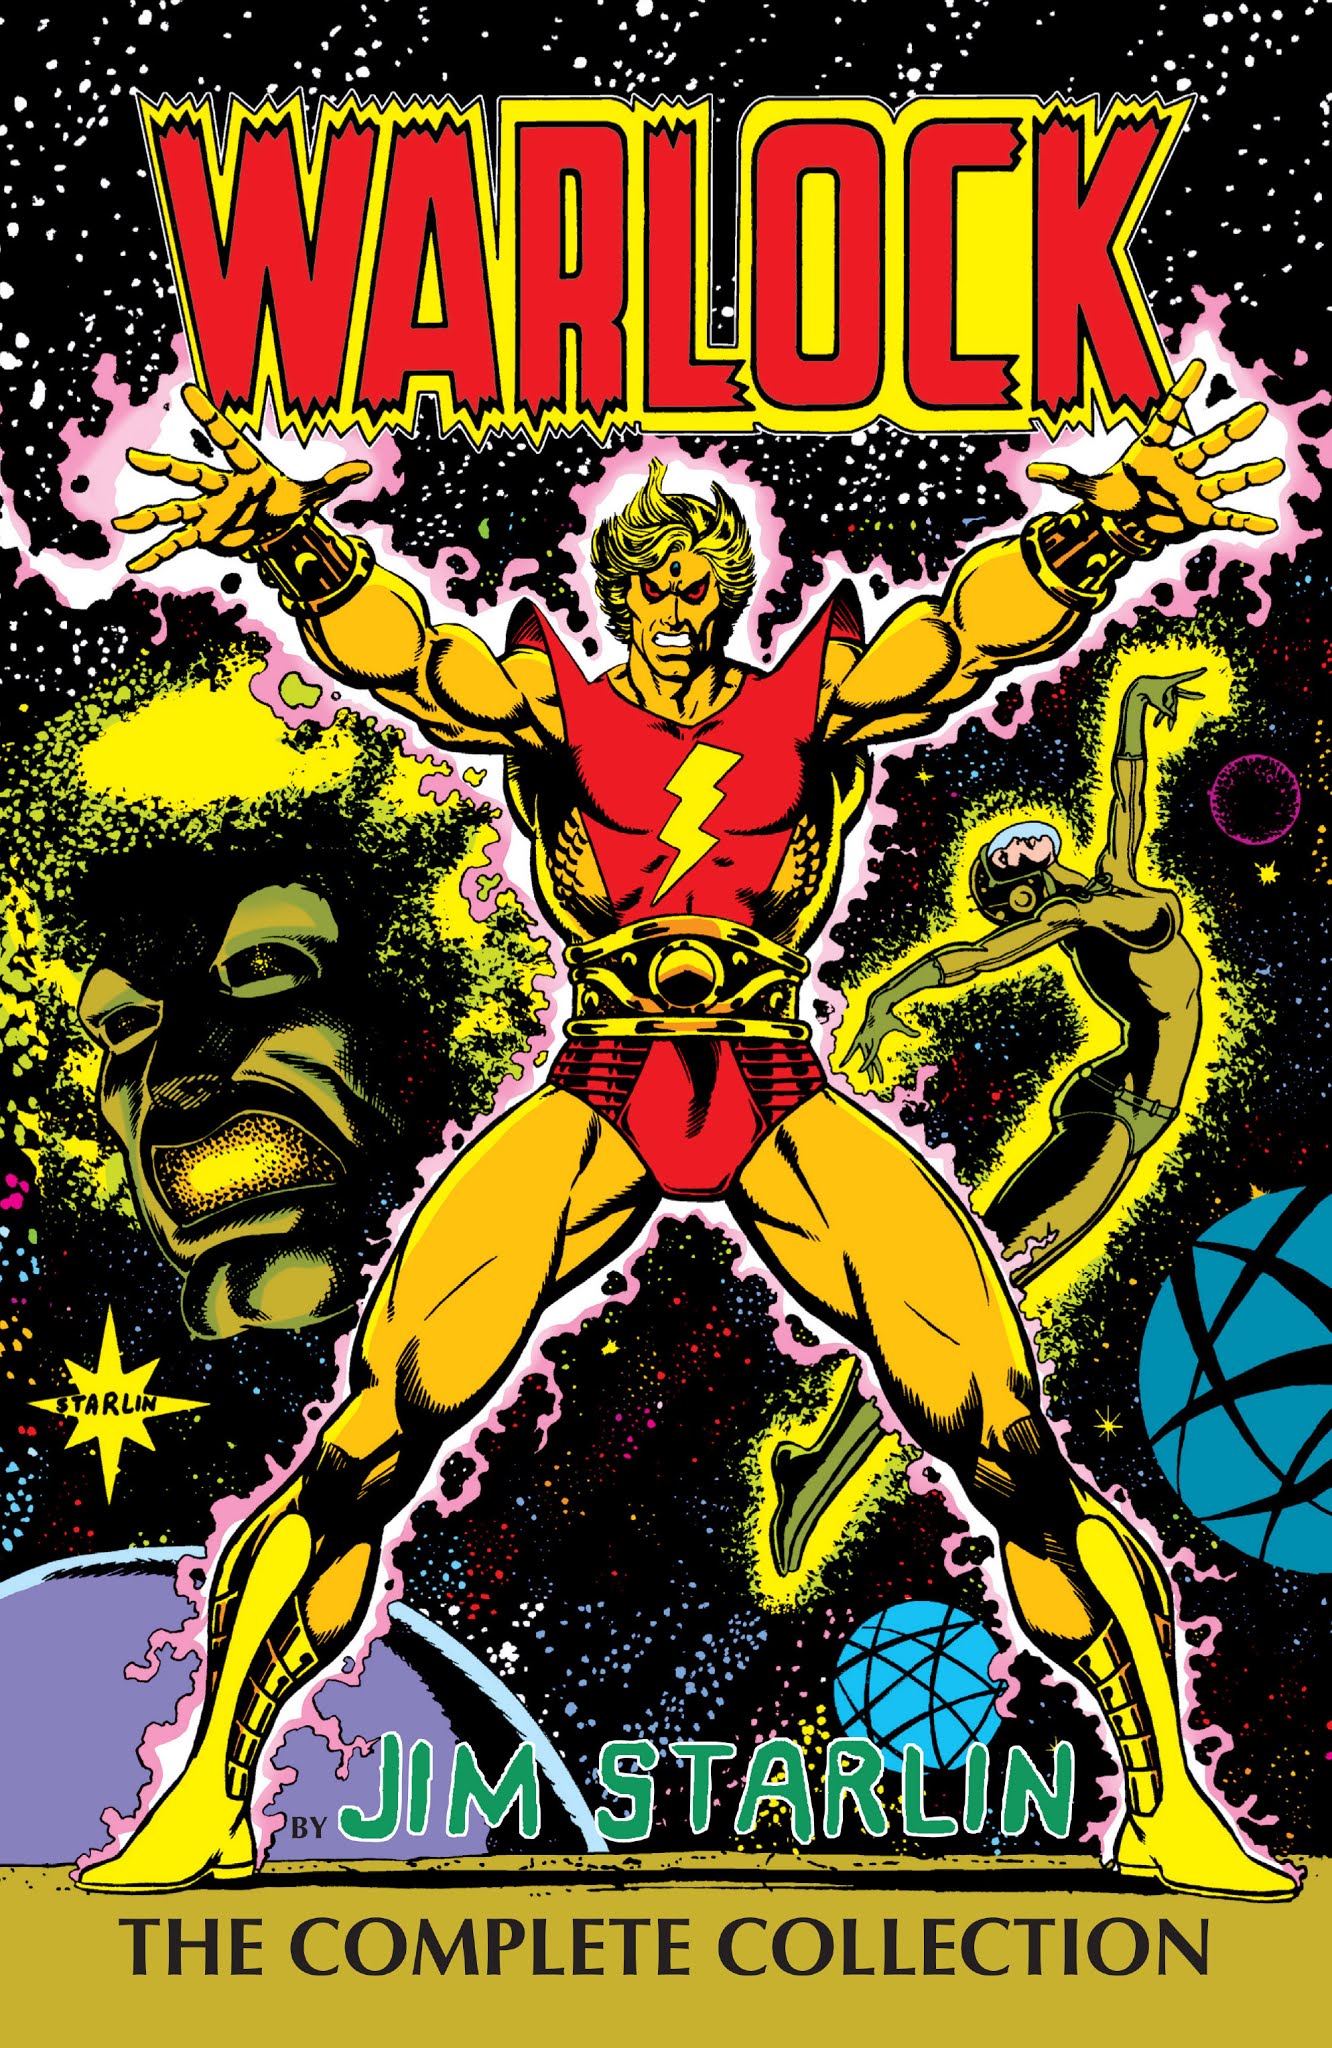 Read online Warlock by Jim Starlin comic -  Issue # TPB (Part 1) - 2